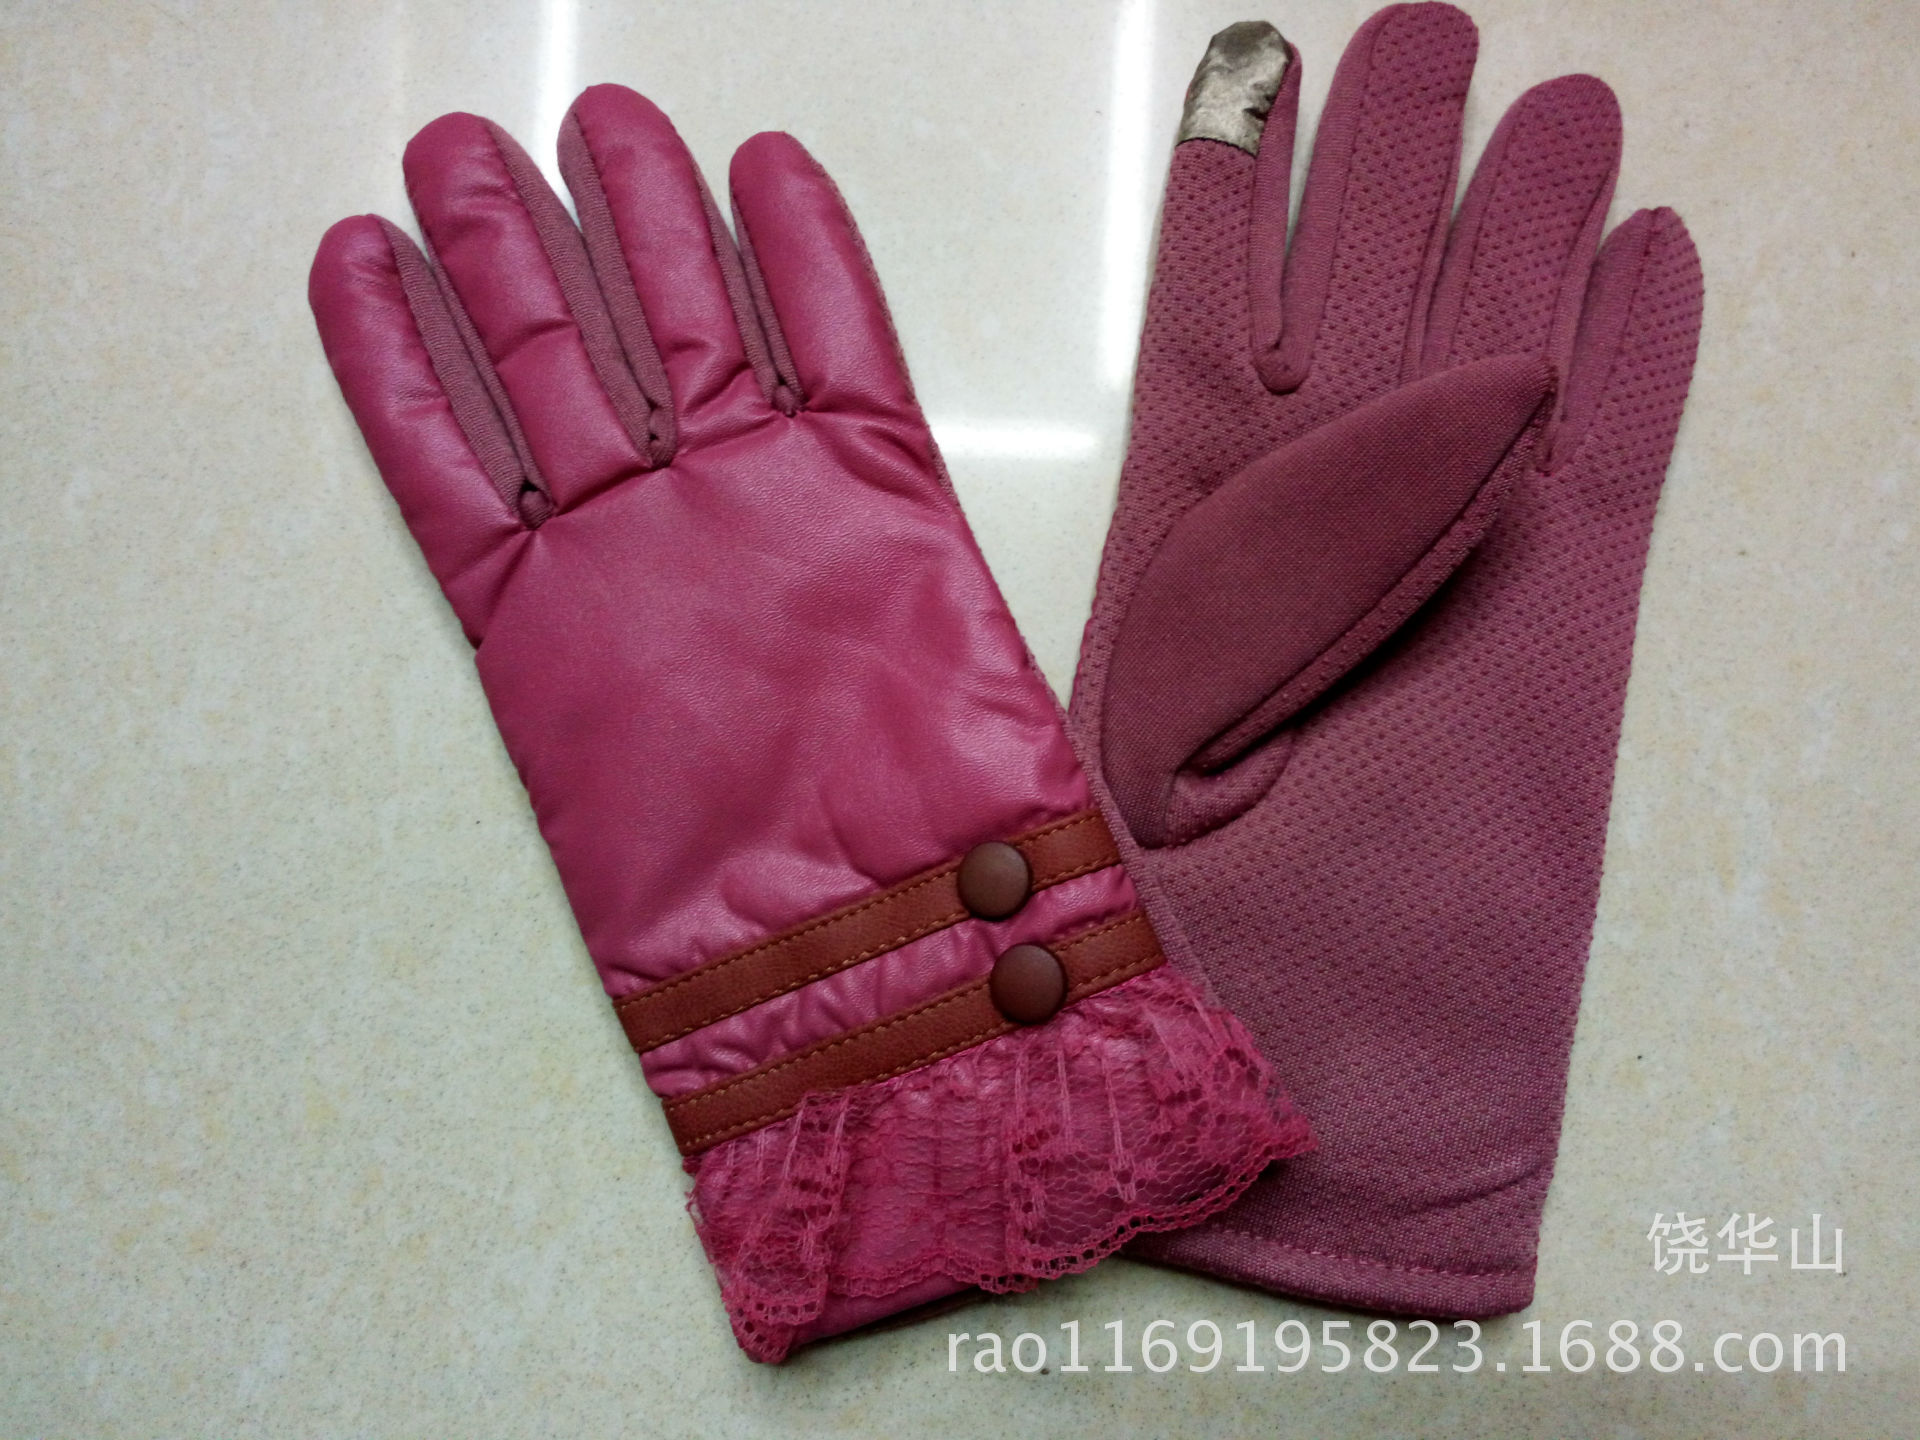 2015 winter warm gloves IMG_20150809_121156